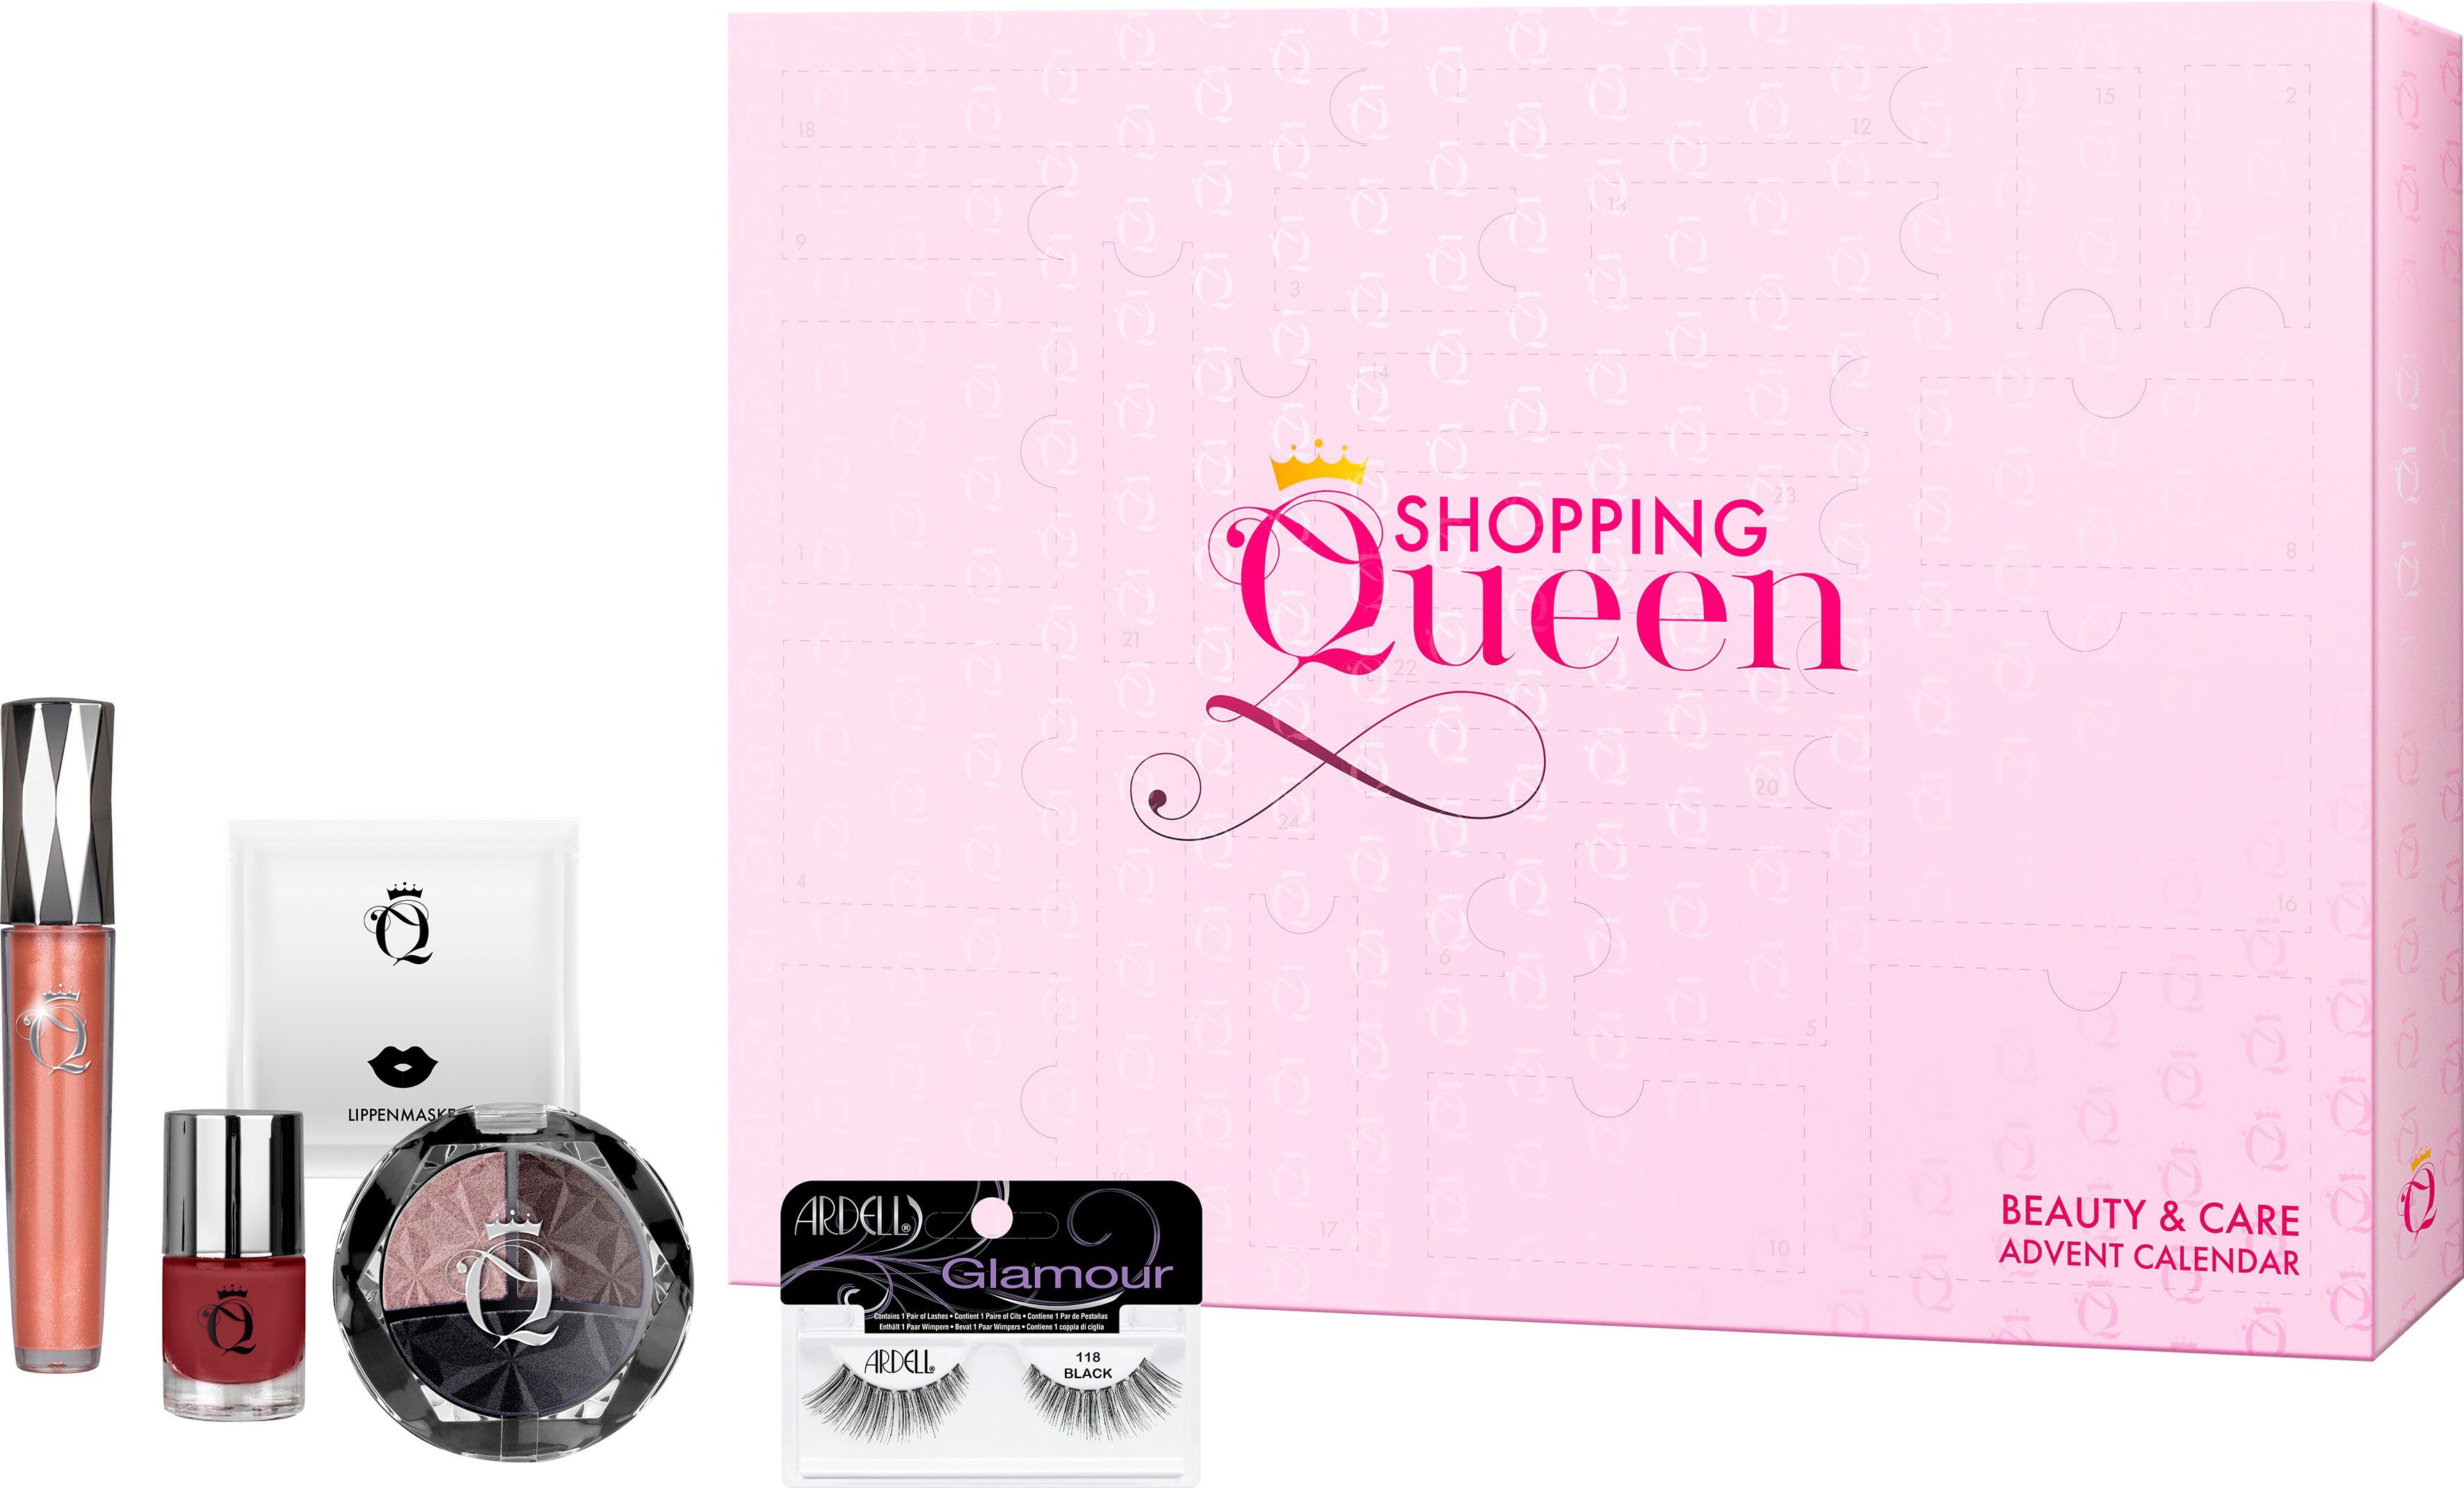 Shopping Queen Adventskalender Shopping Queen ARDELL meets